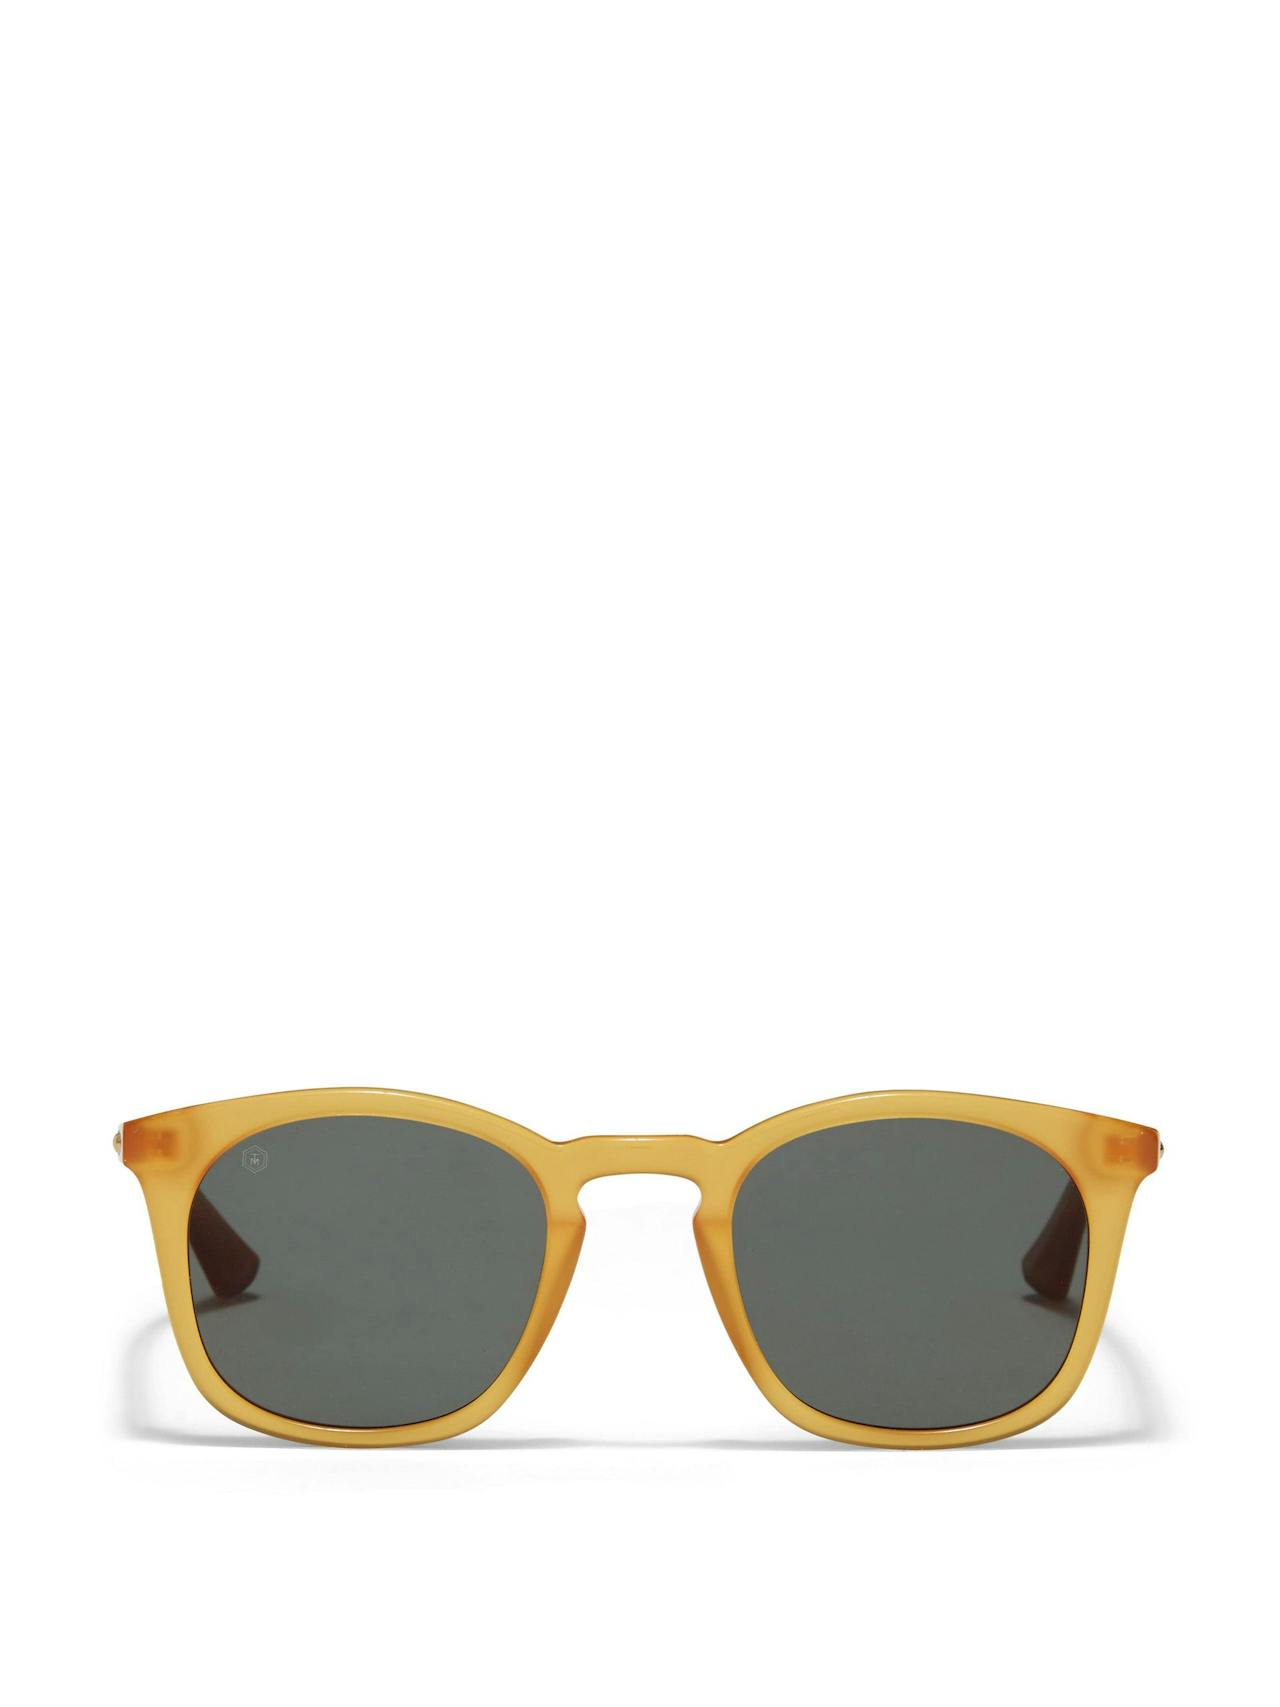 Louis Orson sunglasses